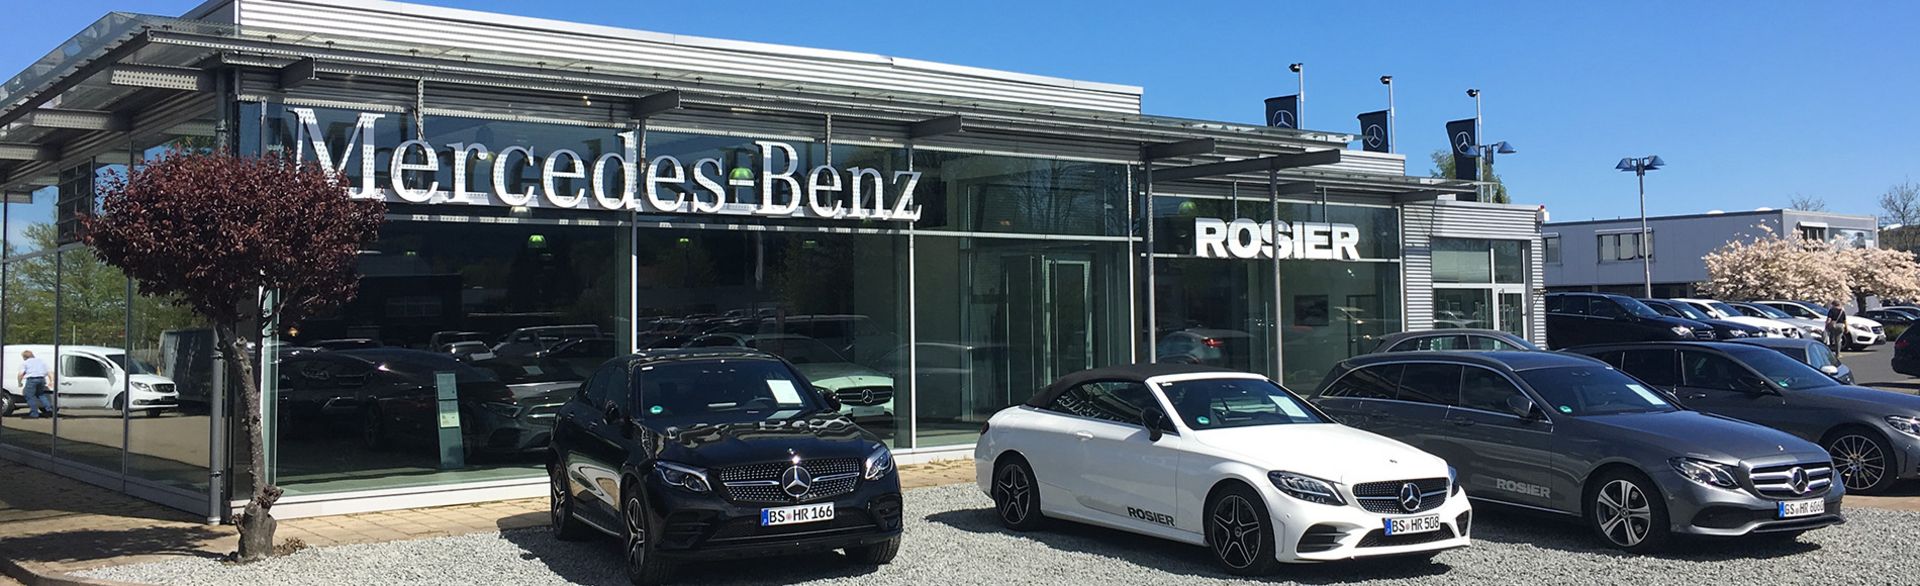 Ihr Mercedes-Benz Partner in Goslar